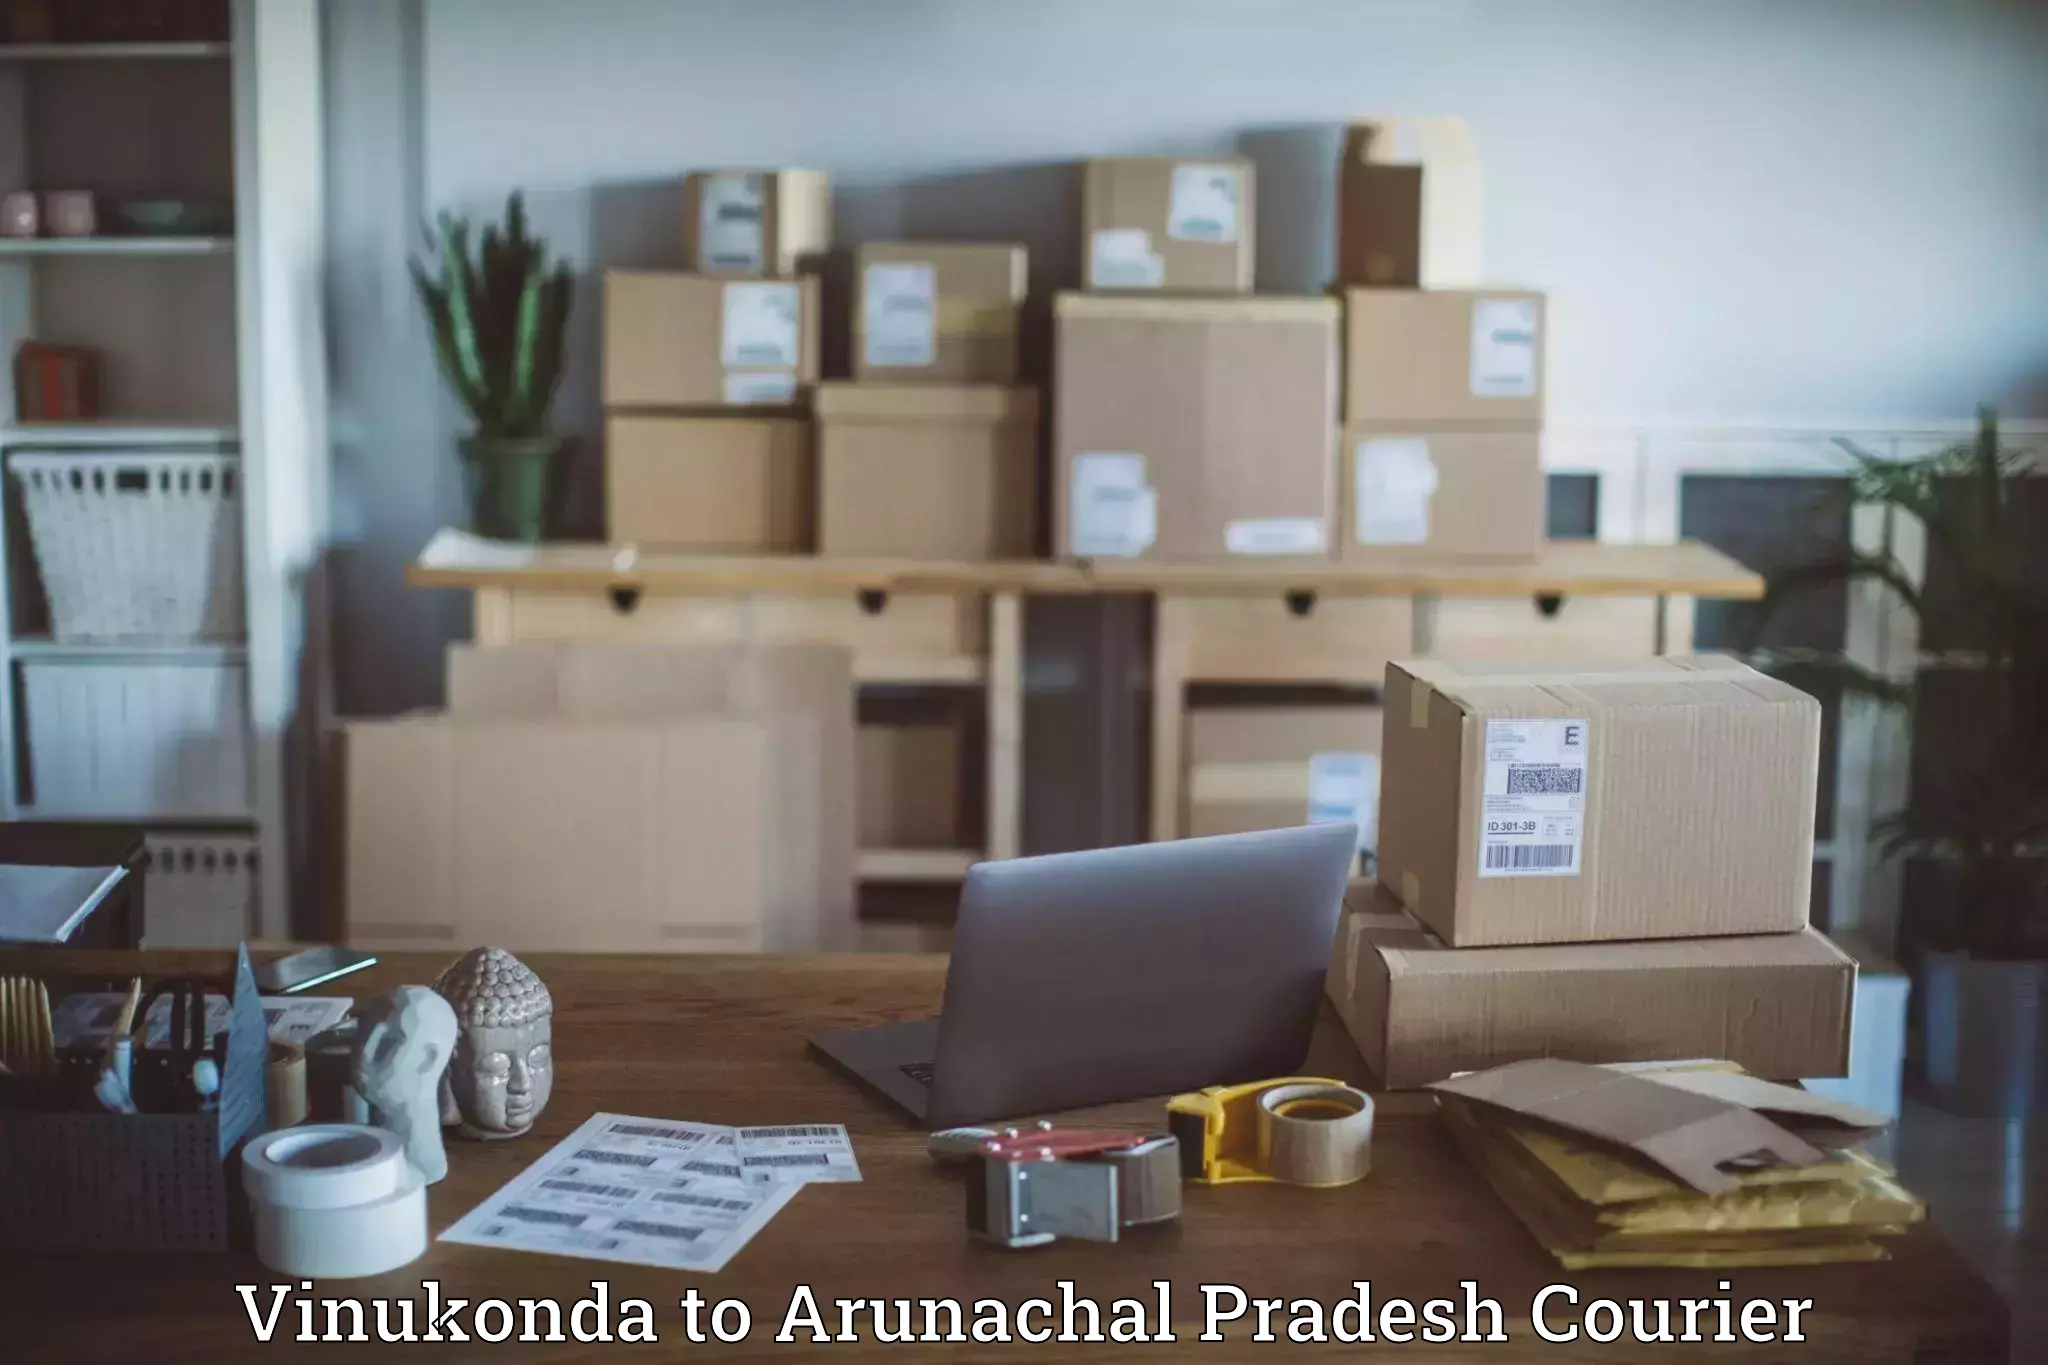 Customer-oriented courier services Vinukonda to Arunachal Pradesh